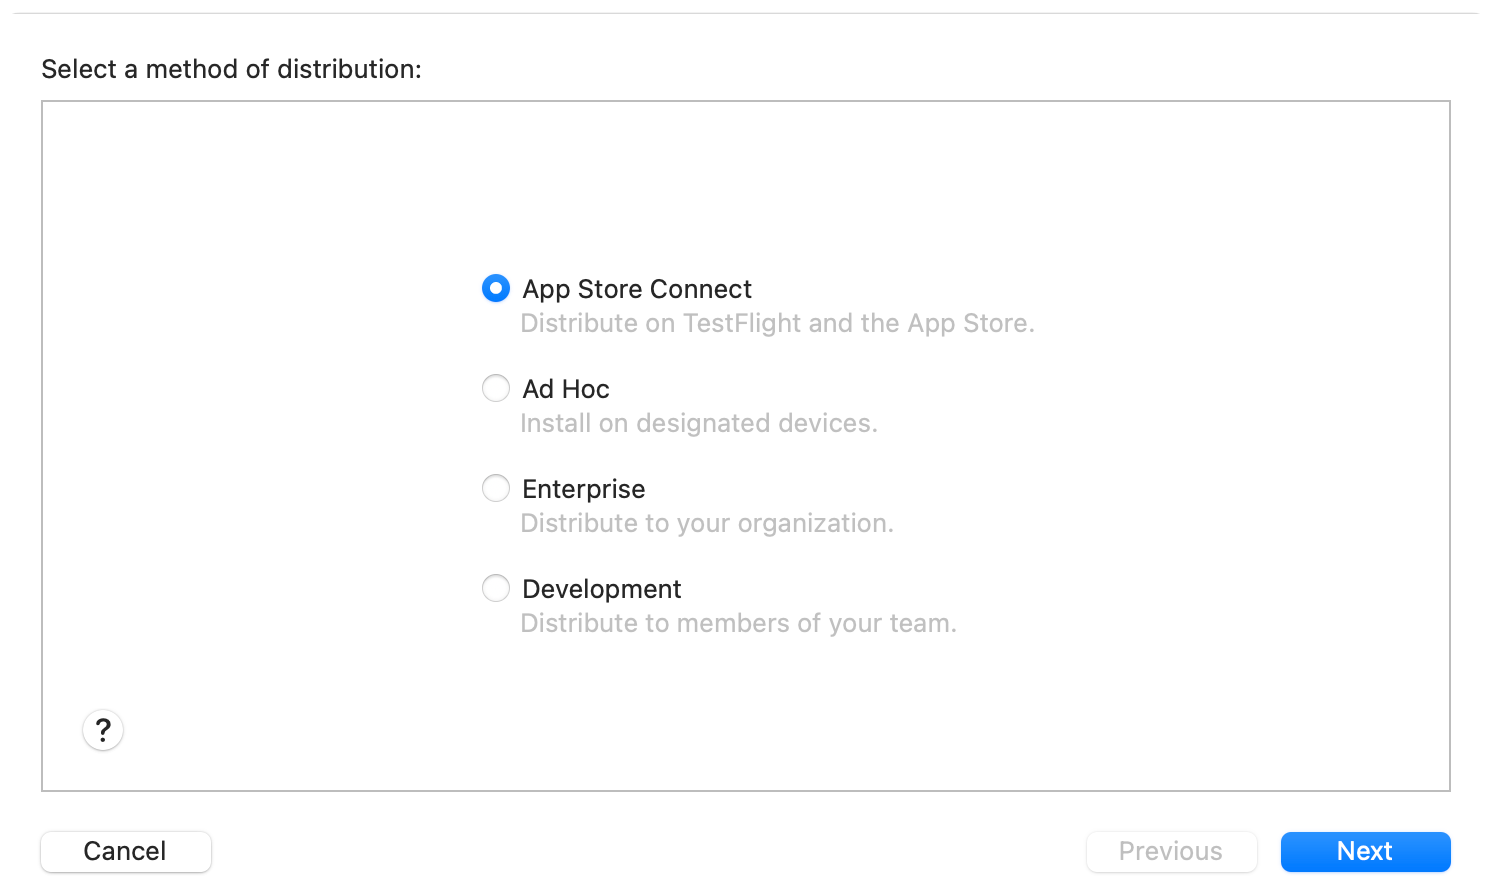 配信方法を選択するためのシートが表示されているスクリーンショット。「App Store Connect」が選択されている。